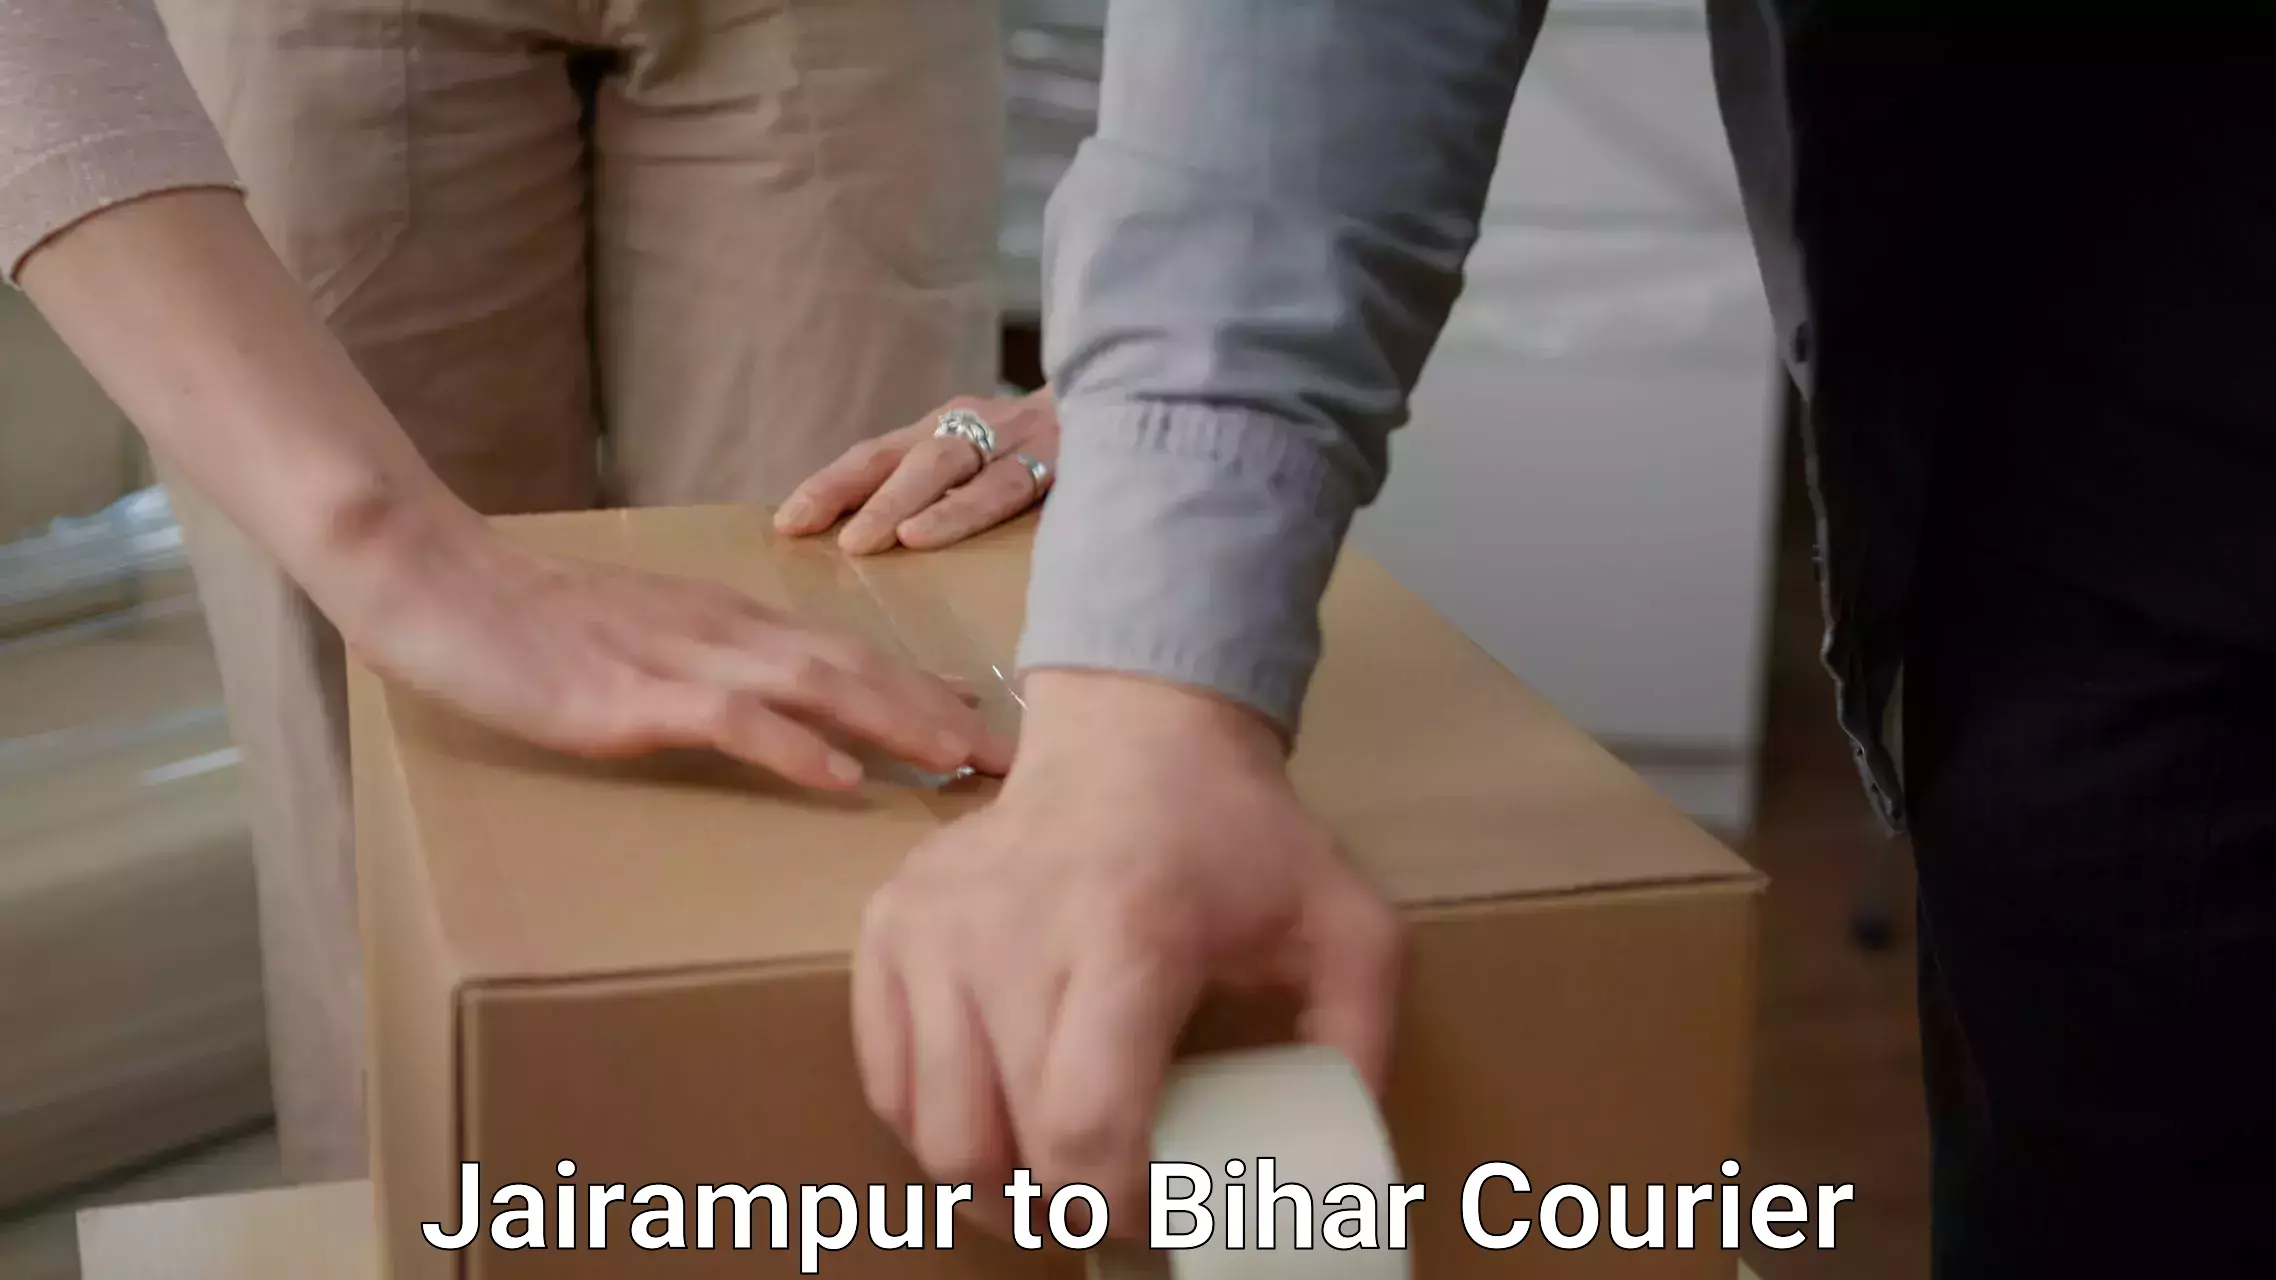 Expert moving and storage Jairampur to Bihta